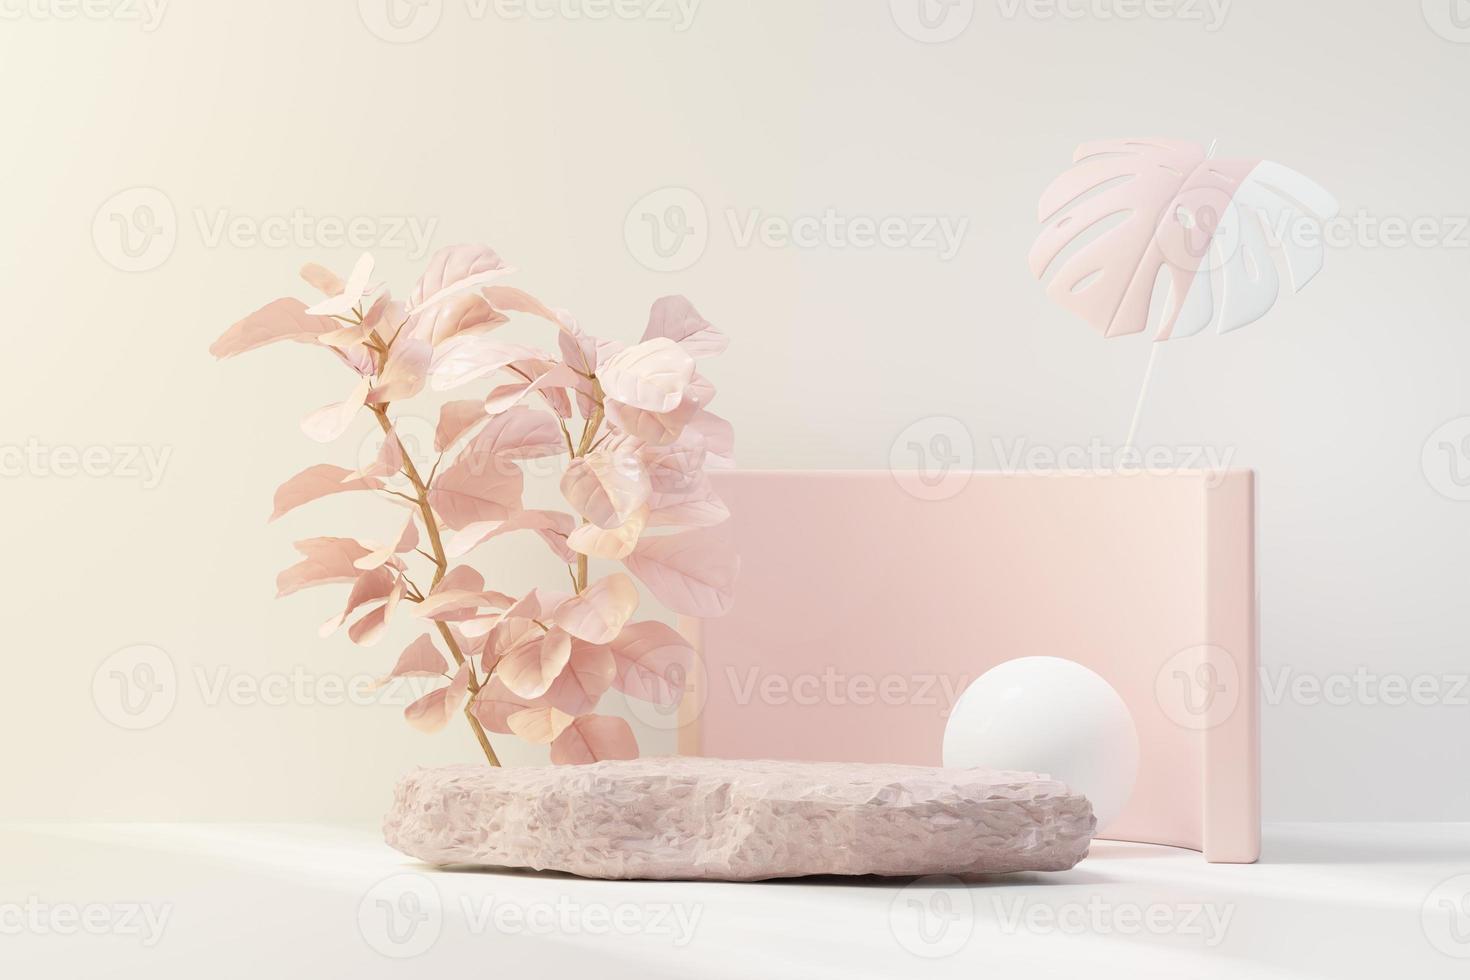 Representación 3d de la pantalla de podio de pedestal abstracto con hojas tropicales y escena de plantas pastel rosa coral. concepto de producto y promoción para publicidad. fondo natural azul pastel. foto